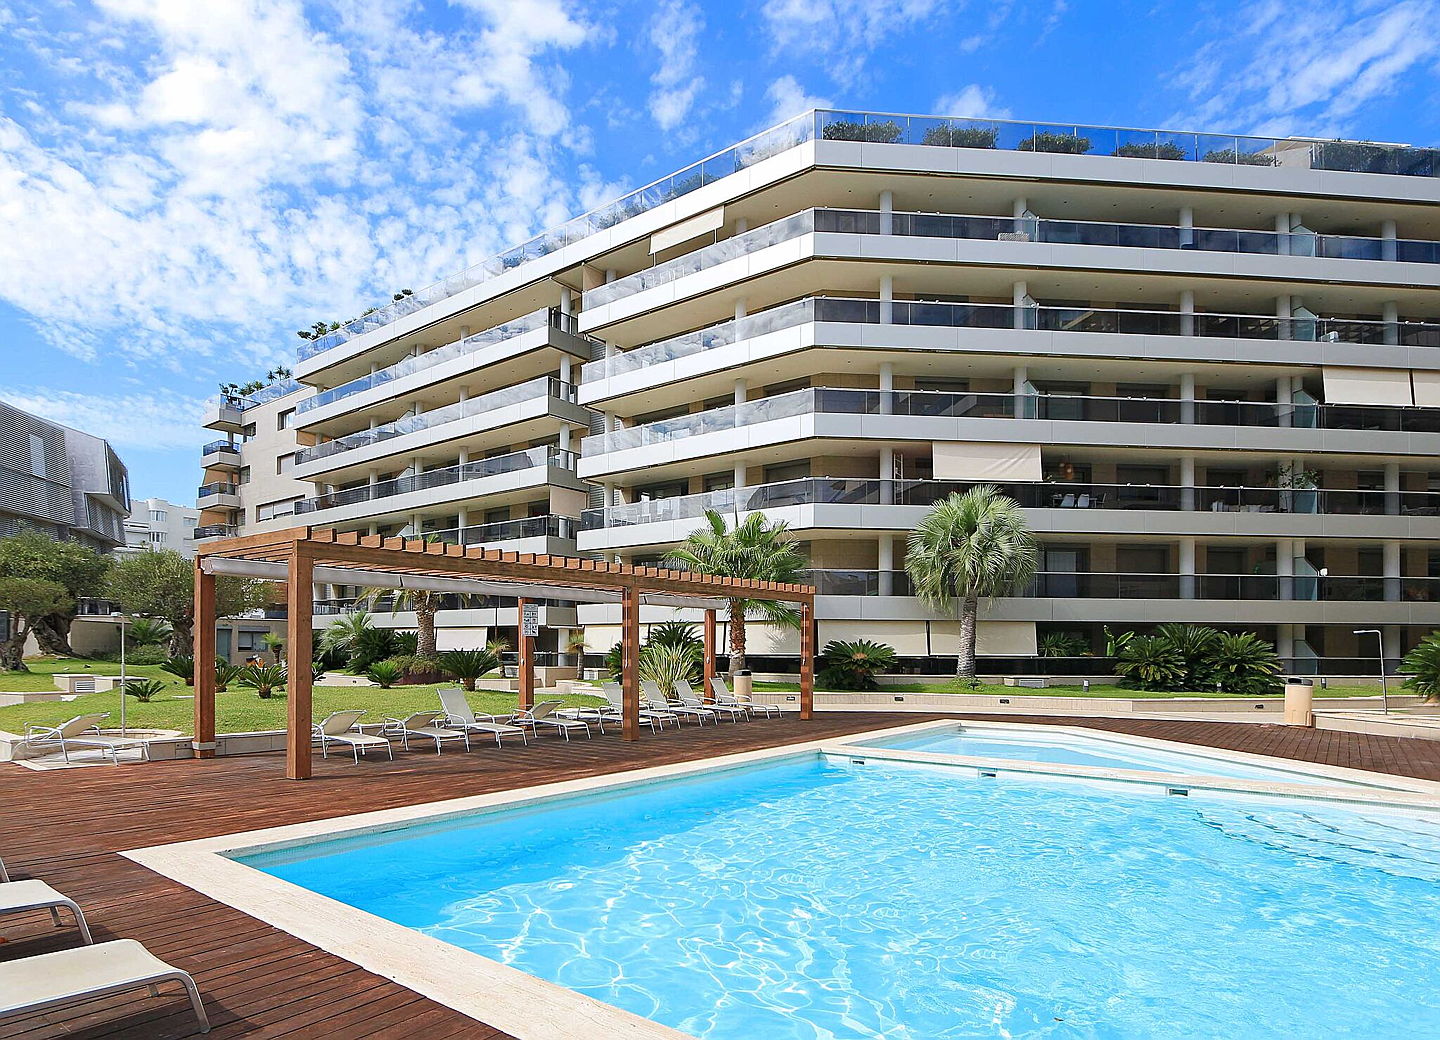  Ibiza
- Compre un bien inmobiliario de lujo (Ibiza)